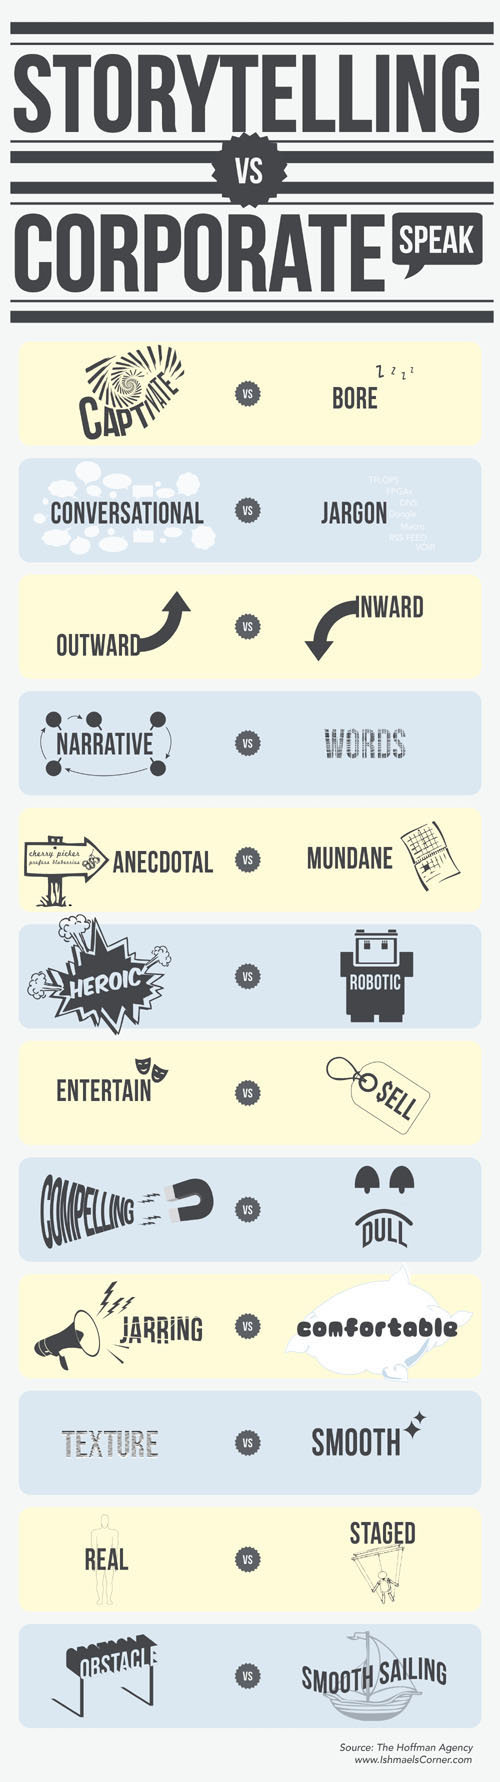 storytelling-vs-corporate-speak-infographic